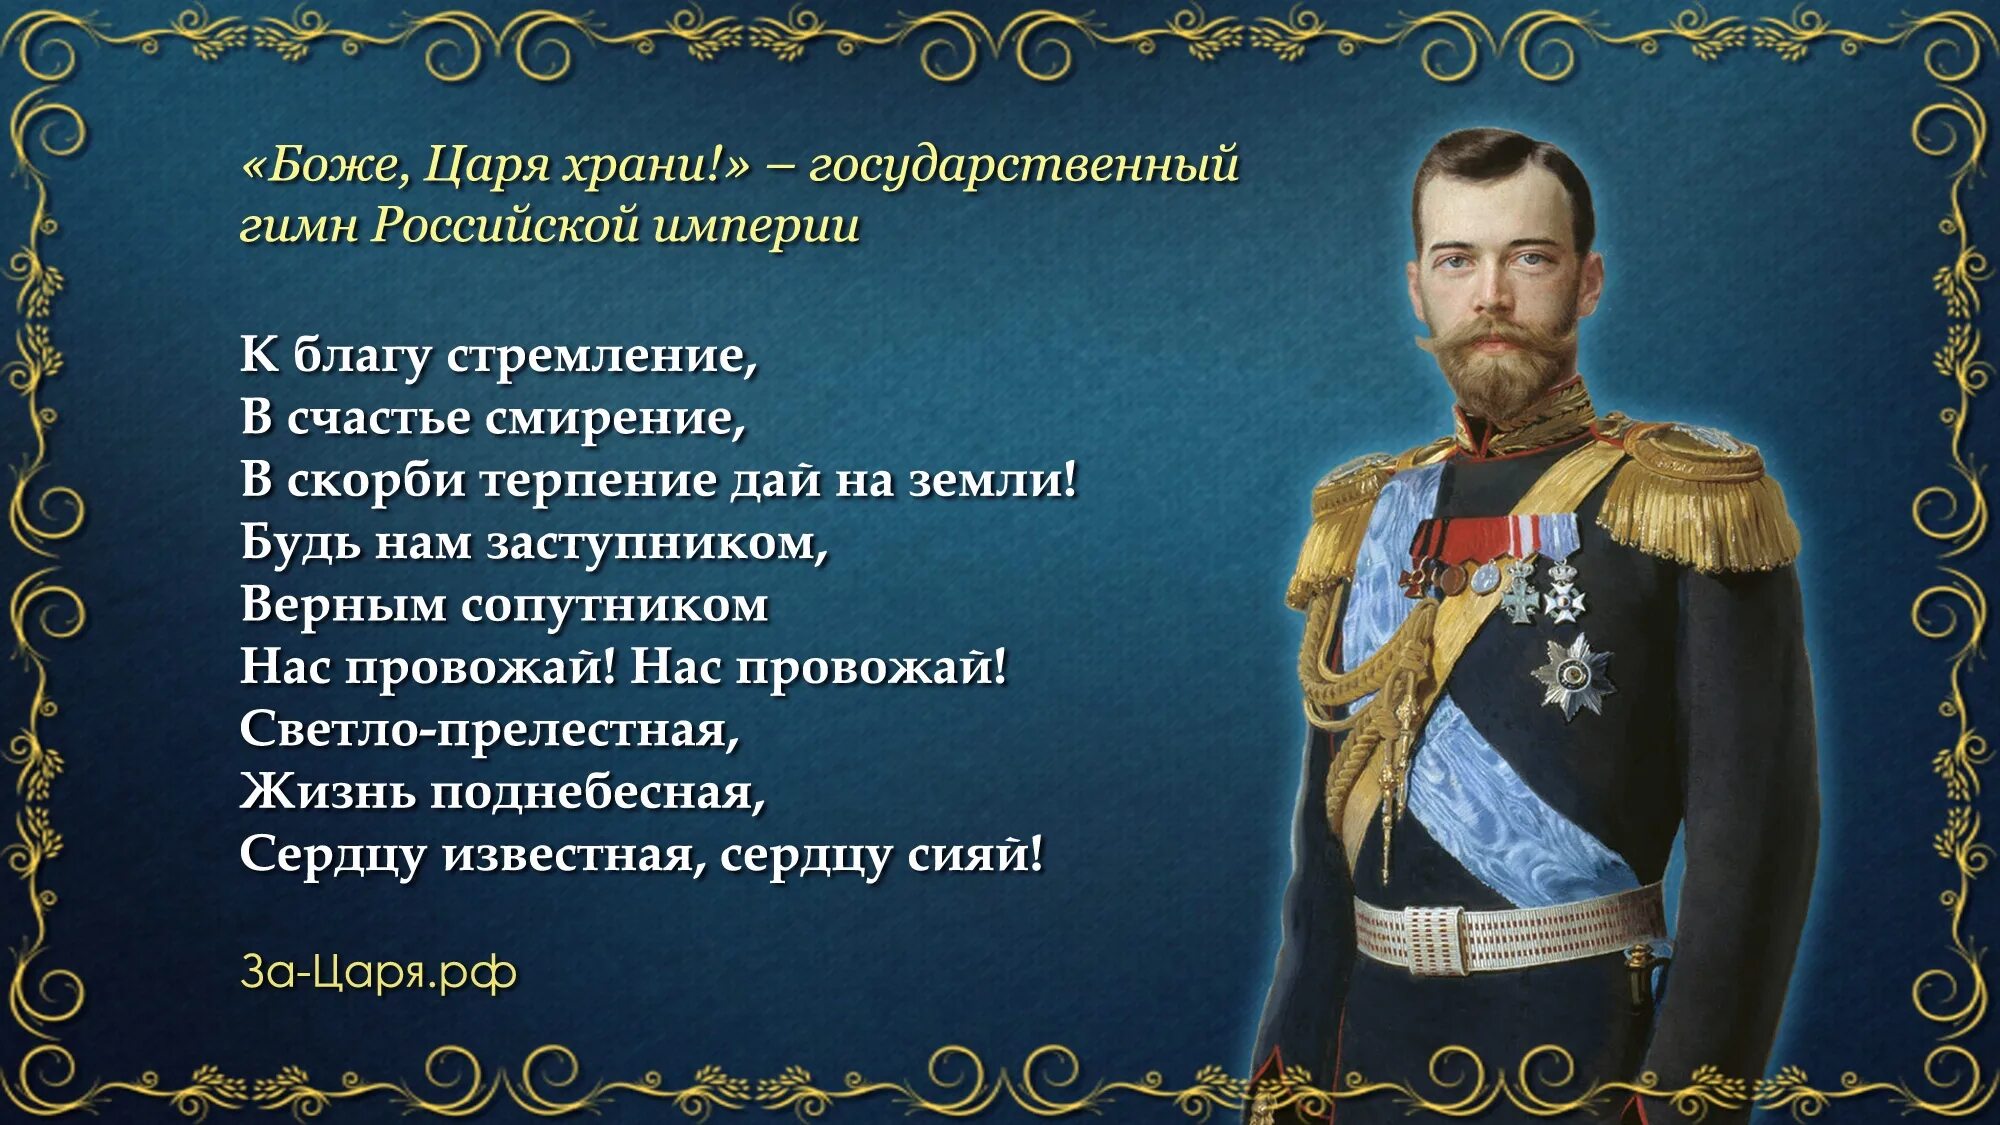 Боже царя храни. Гимн Российской империи. Последний император так высказывался о полуострове